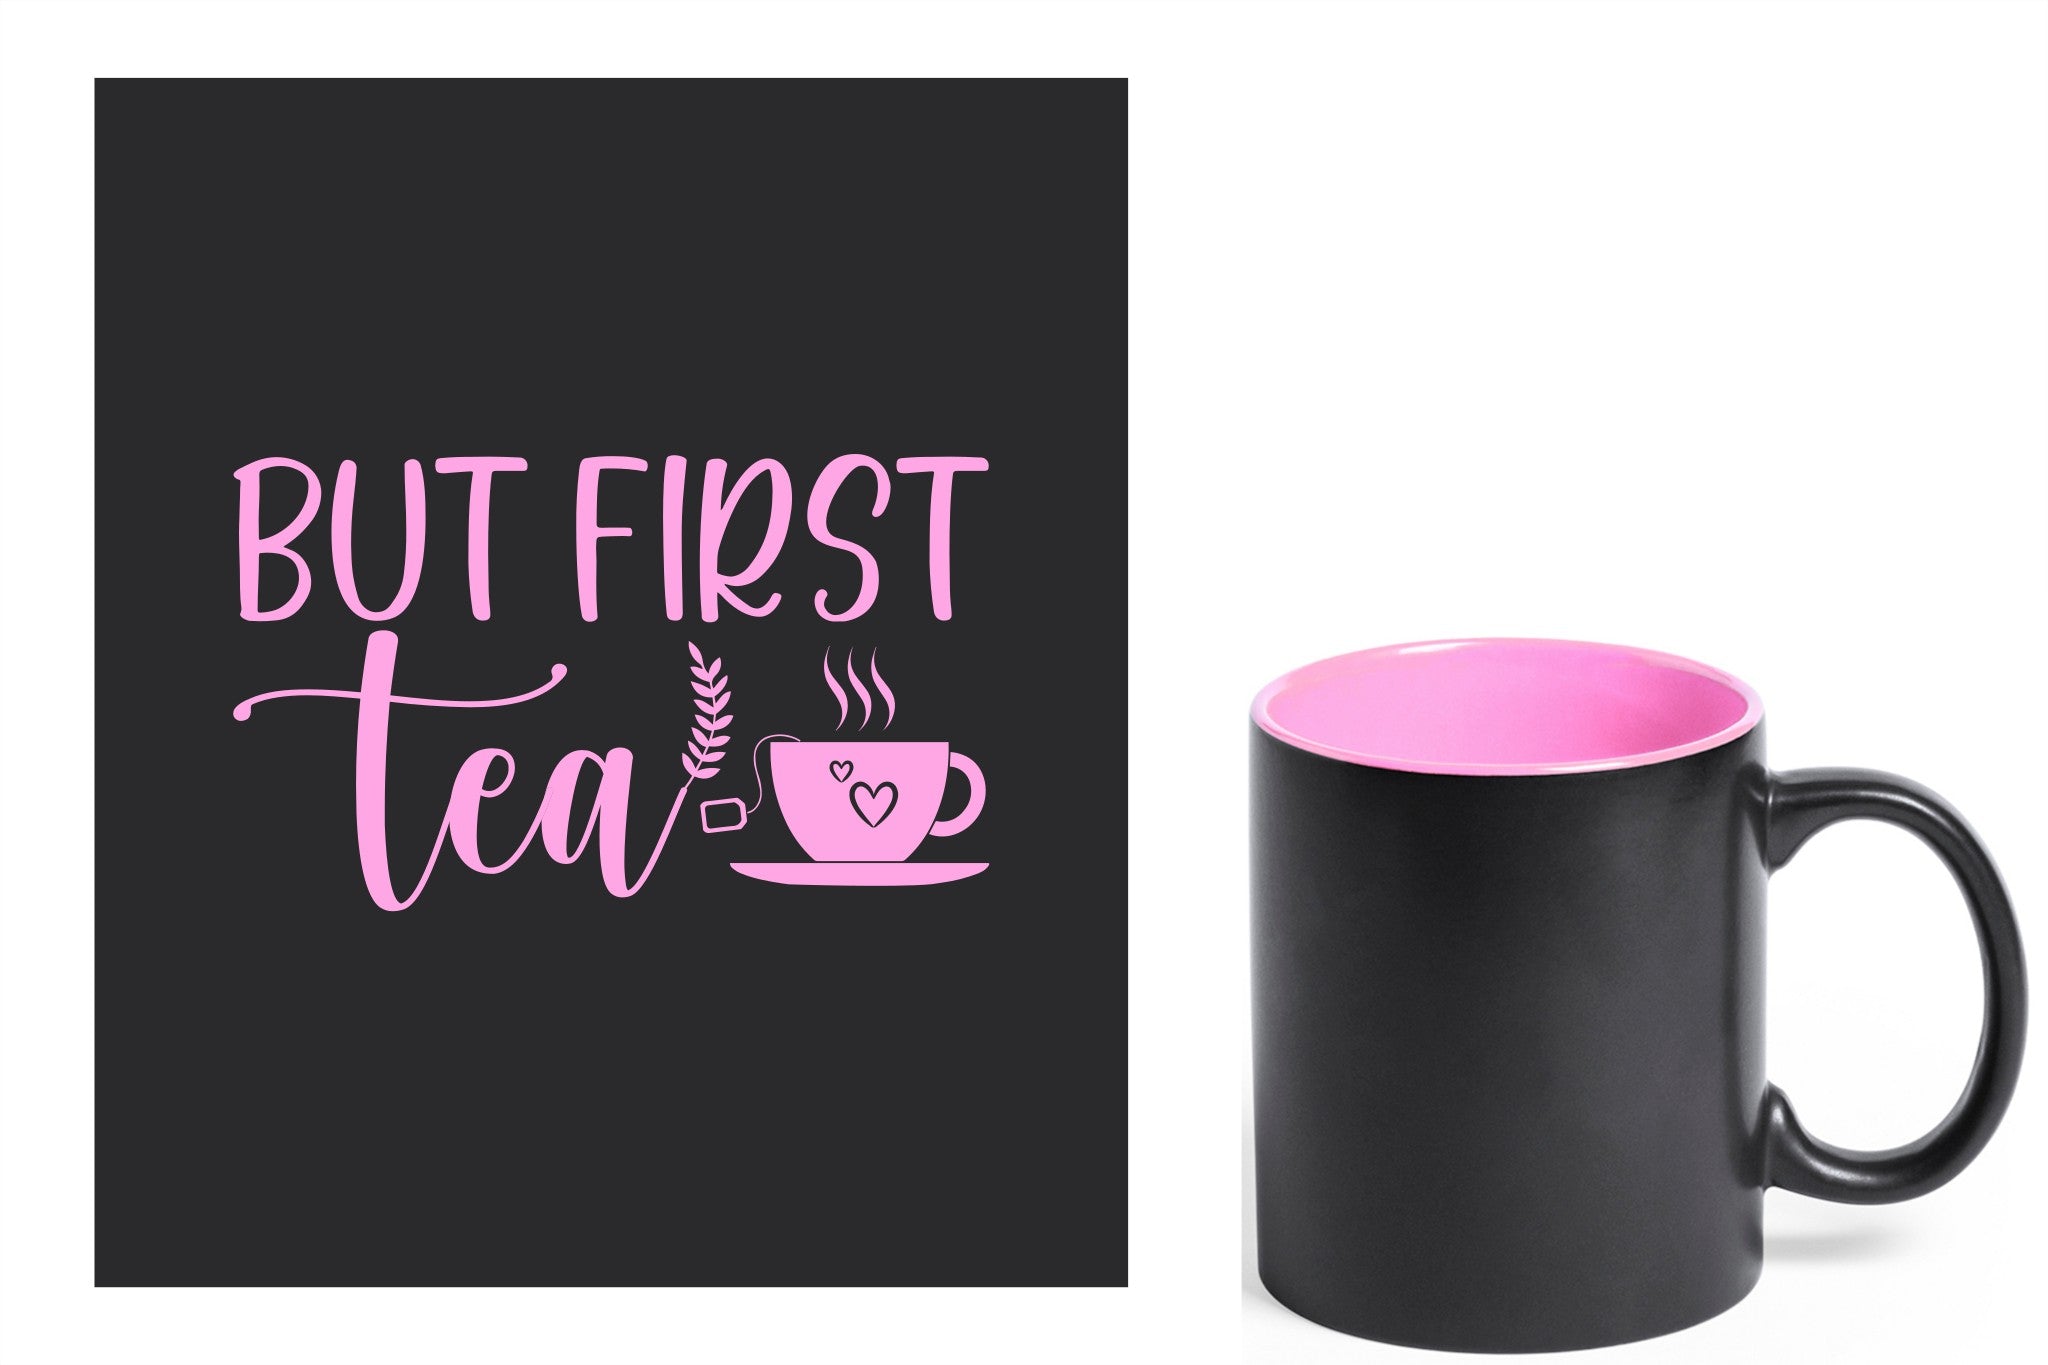 zwarte keramische mok met roze gravure  'But first tea'.